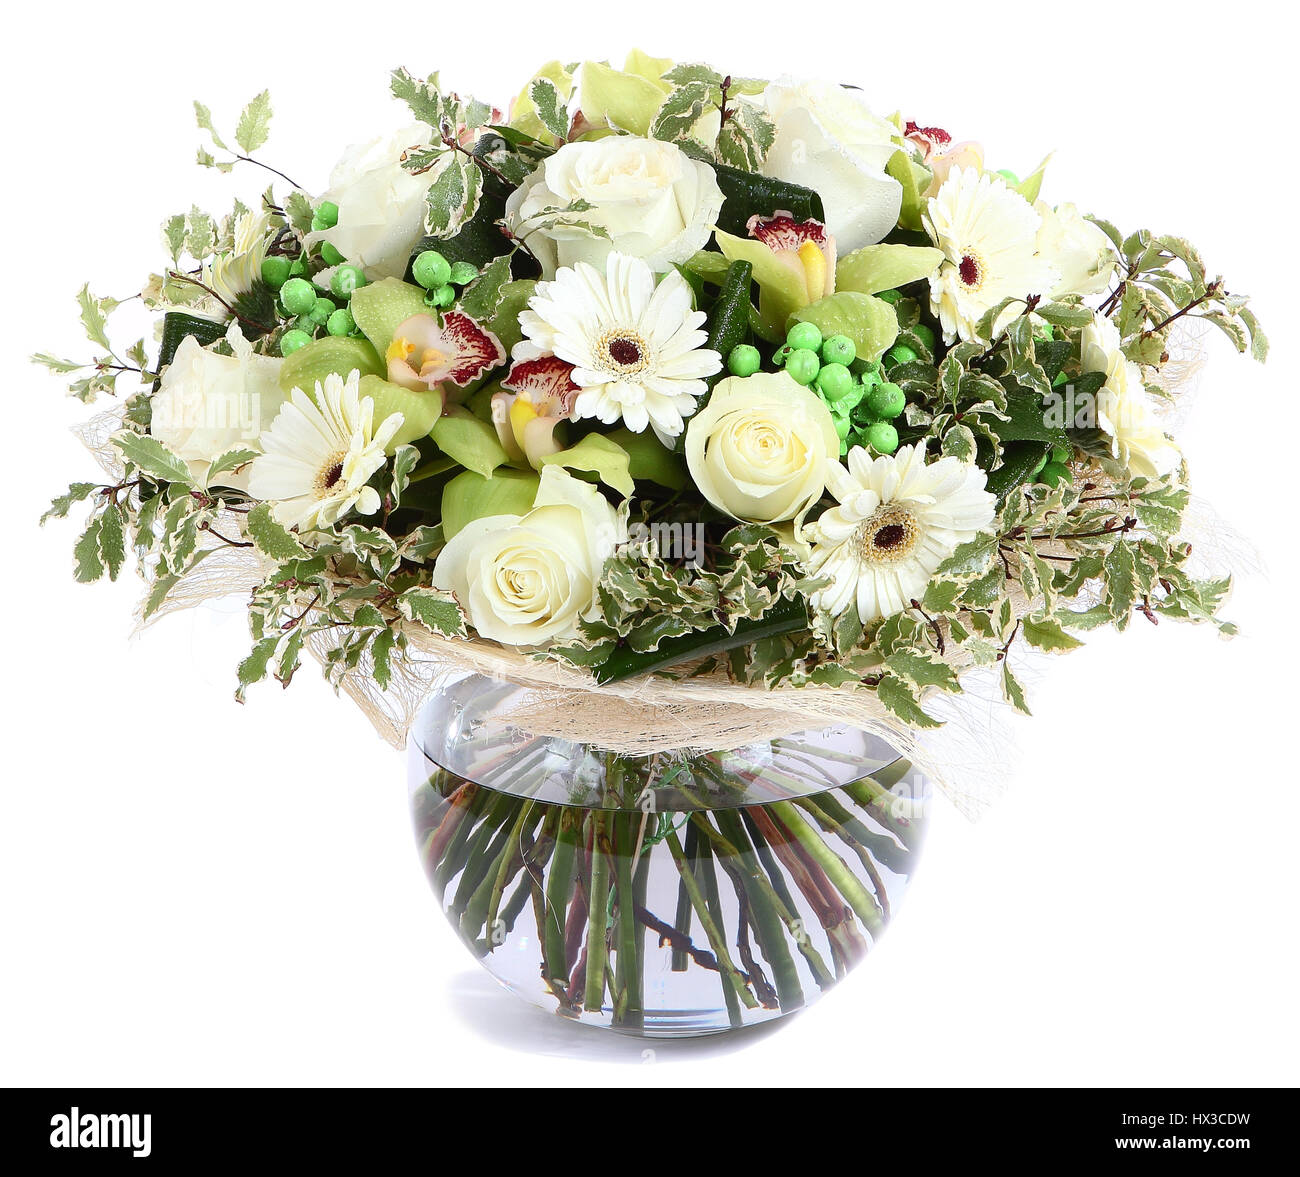 Arreglo floral en vidrio transparente florero: rosas blancas, orquídeas y  margaritas, gerberas blancas arvejas verdes. Aislado sobre fondo blanco.  Compos florística Fotografía de stock - Alamy